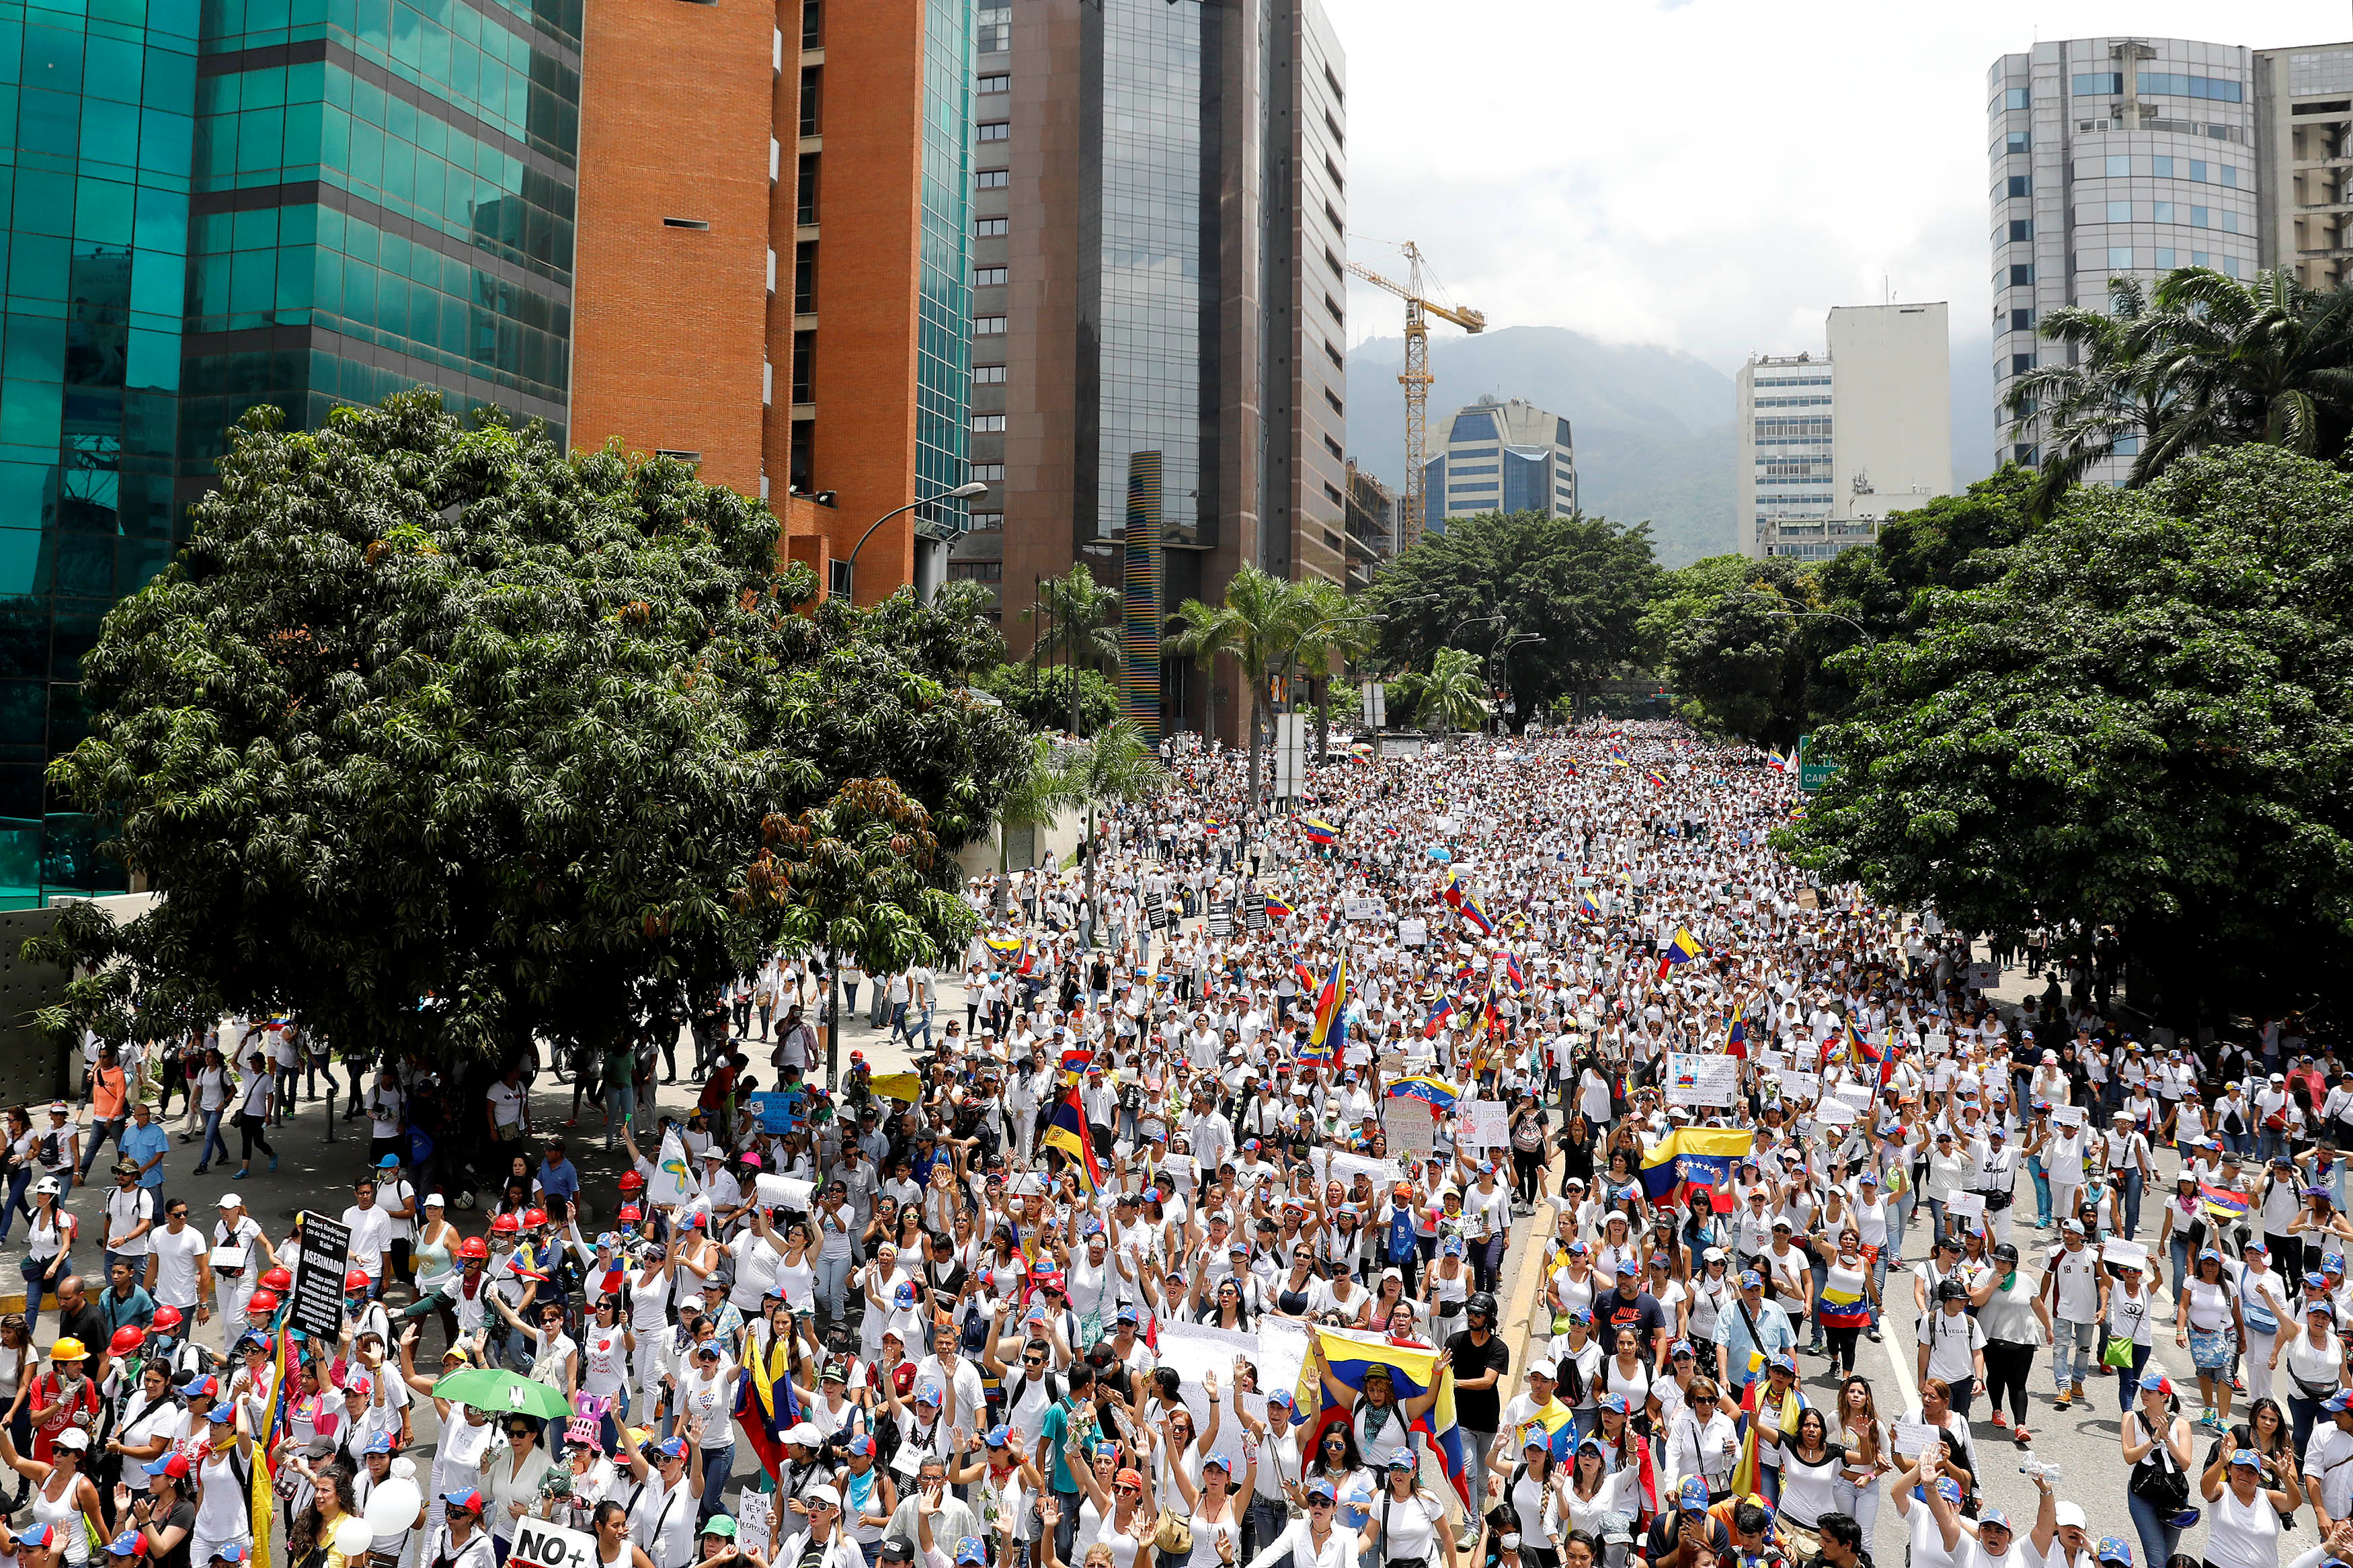 Las mujeres marchan contra la "represión" y "por la paz" en Venezuela